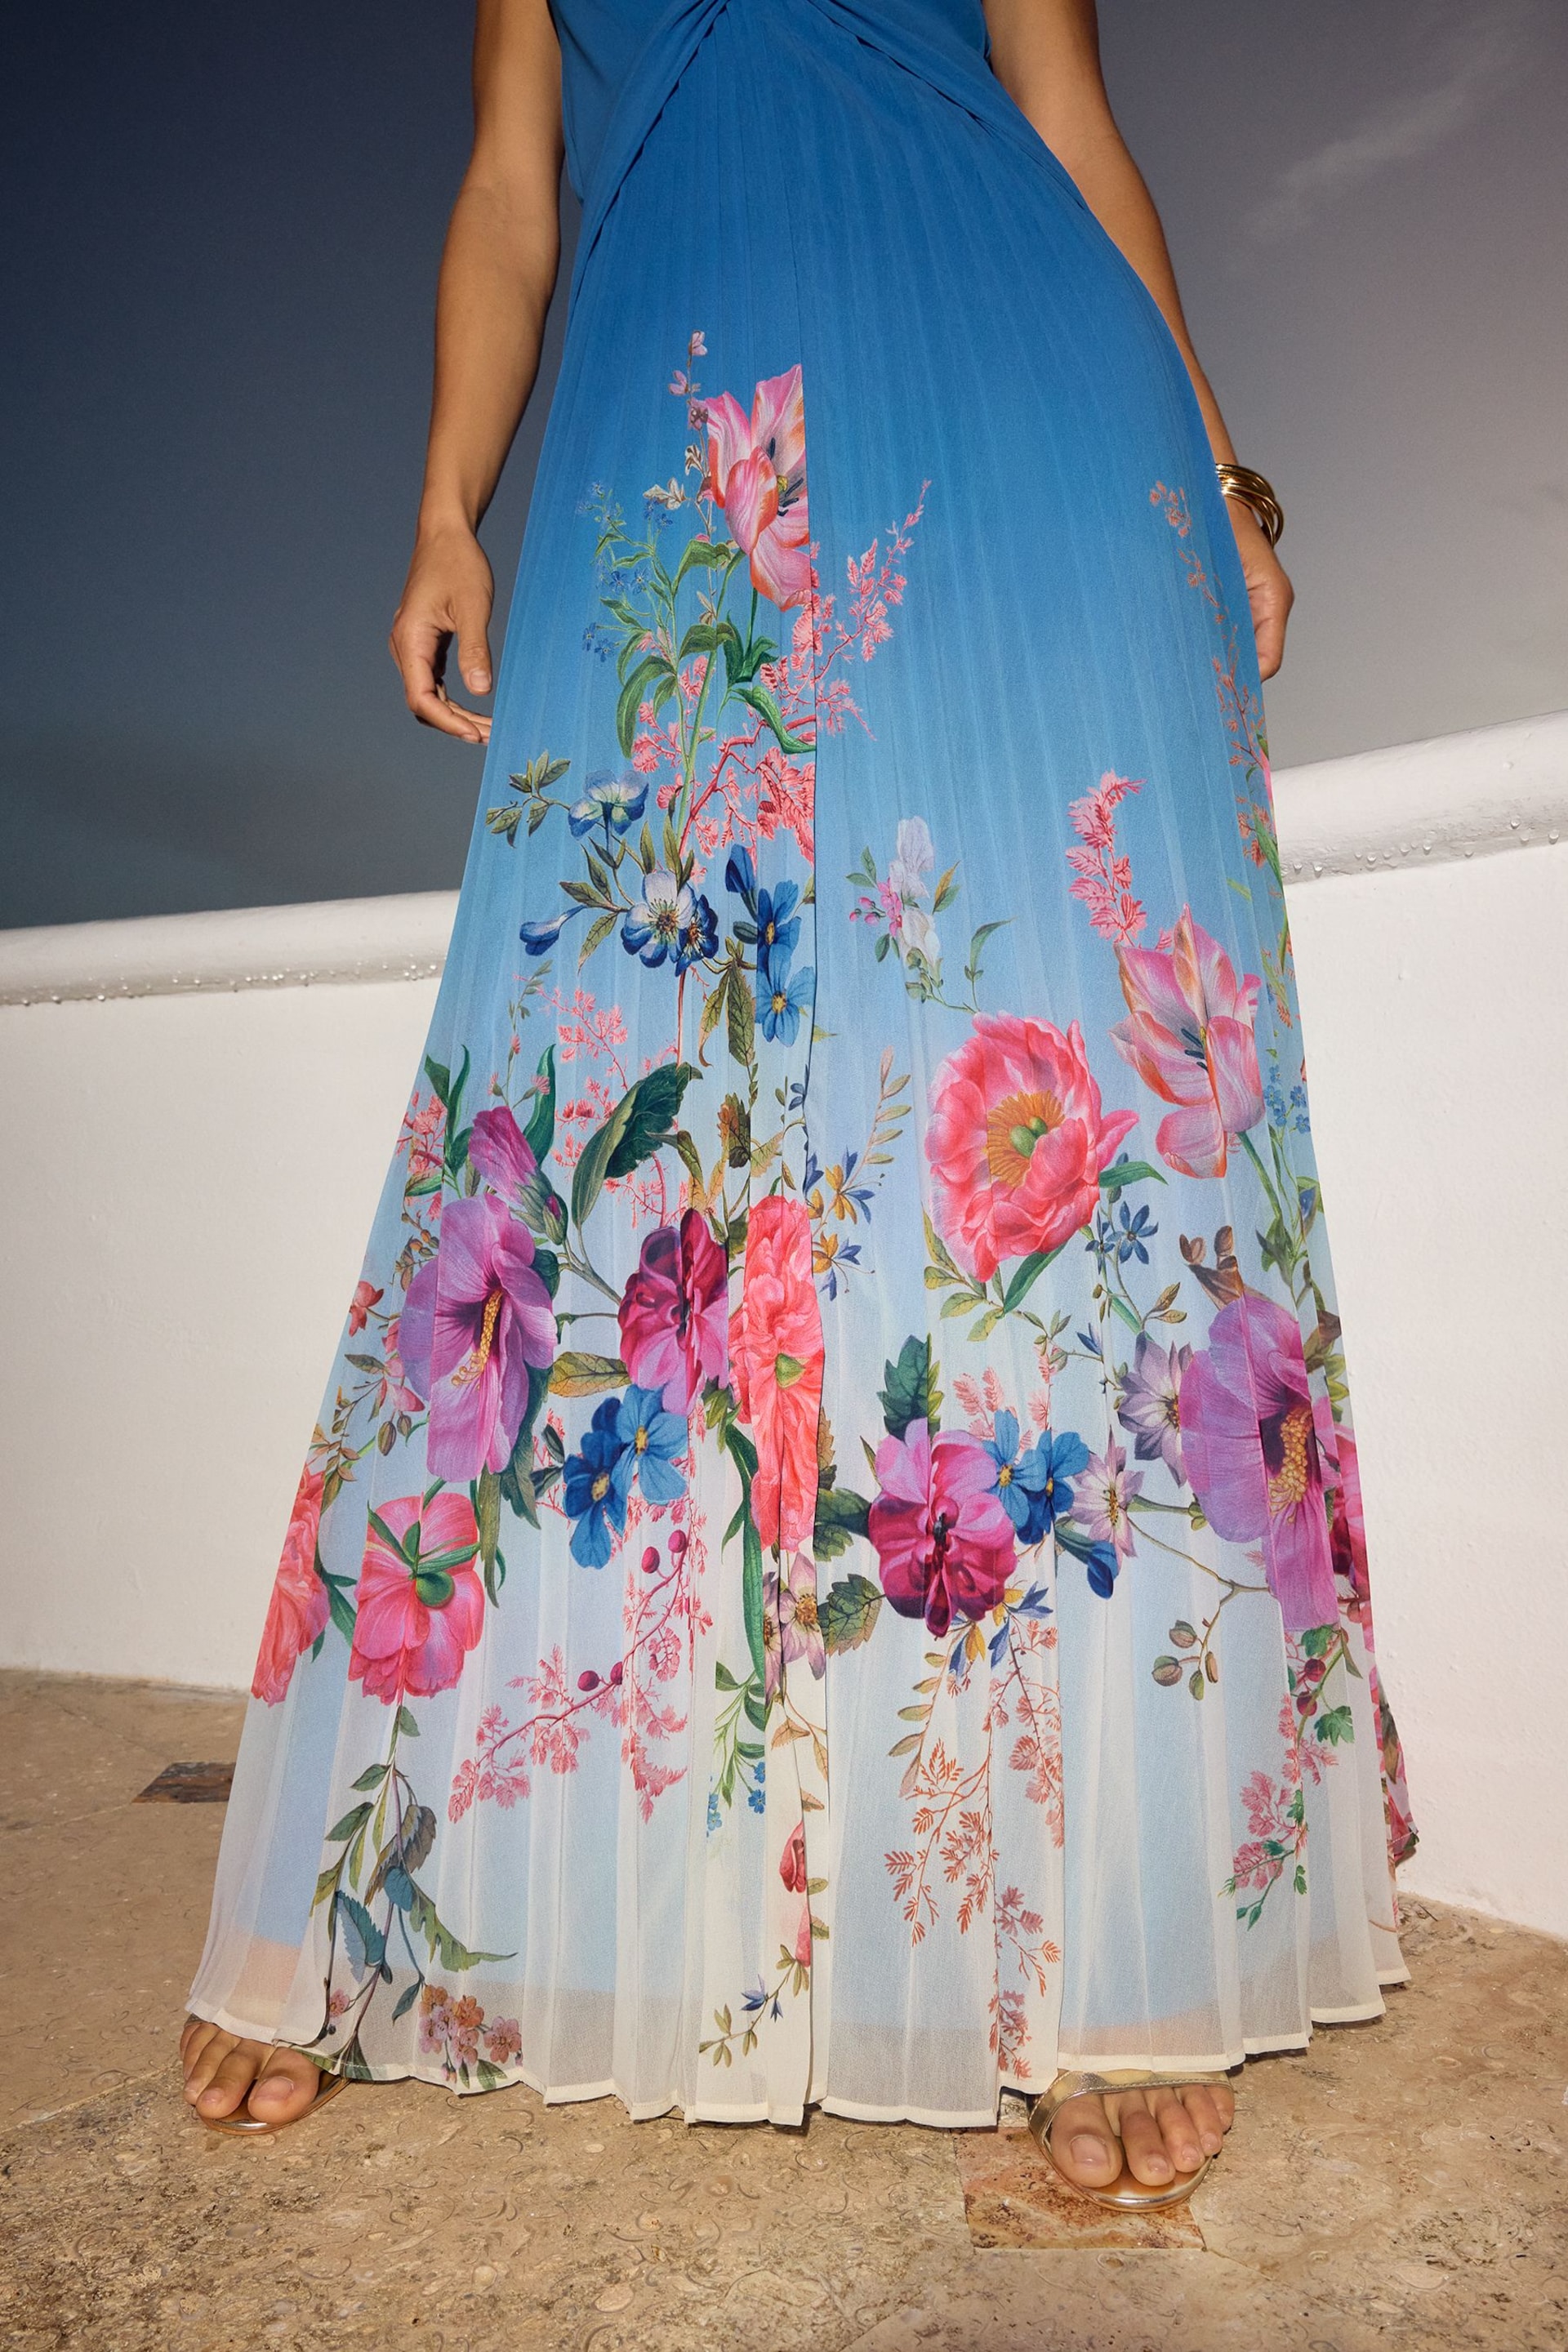 V&A | Love & Roses Blue Floral Placement Halterneck Plunge Dress - Image 2 of 4